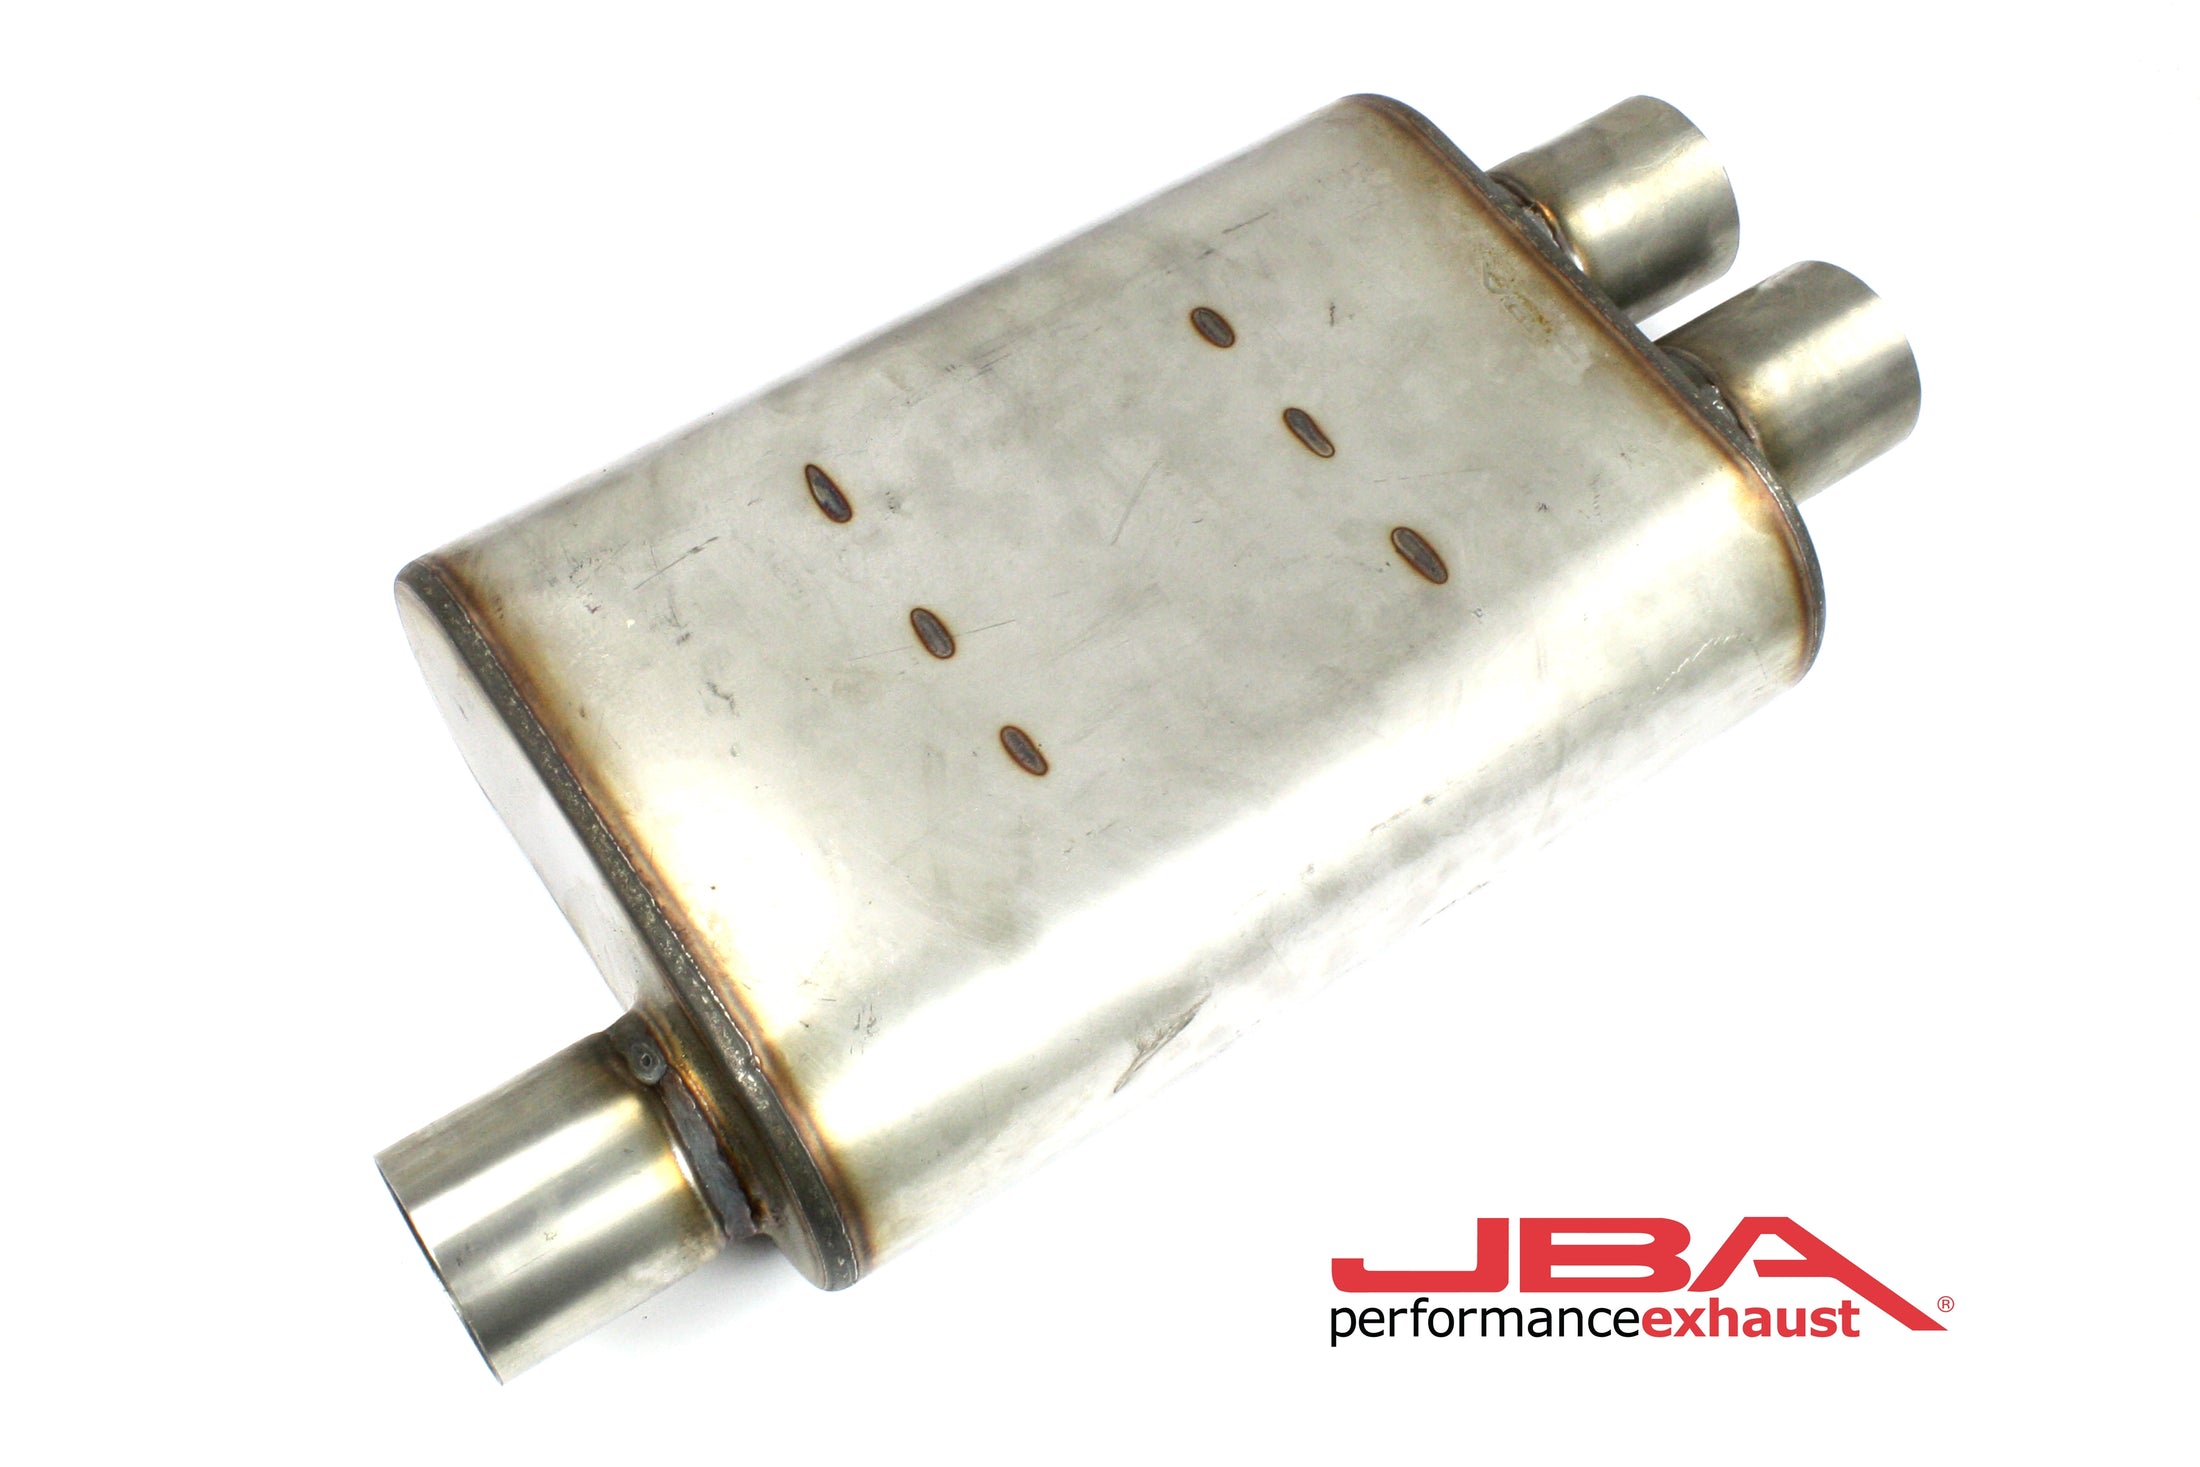 JBA Performance Exhaust 40-251302 "Universal" Chambered Style 304SS Muffler 13"x9.75"x4" 2.5" Inlet Diameter Offset/2.5" Dual Outlet